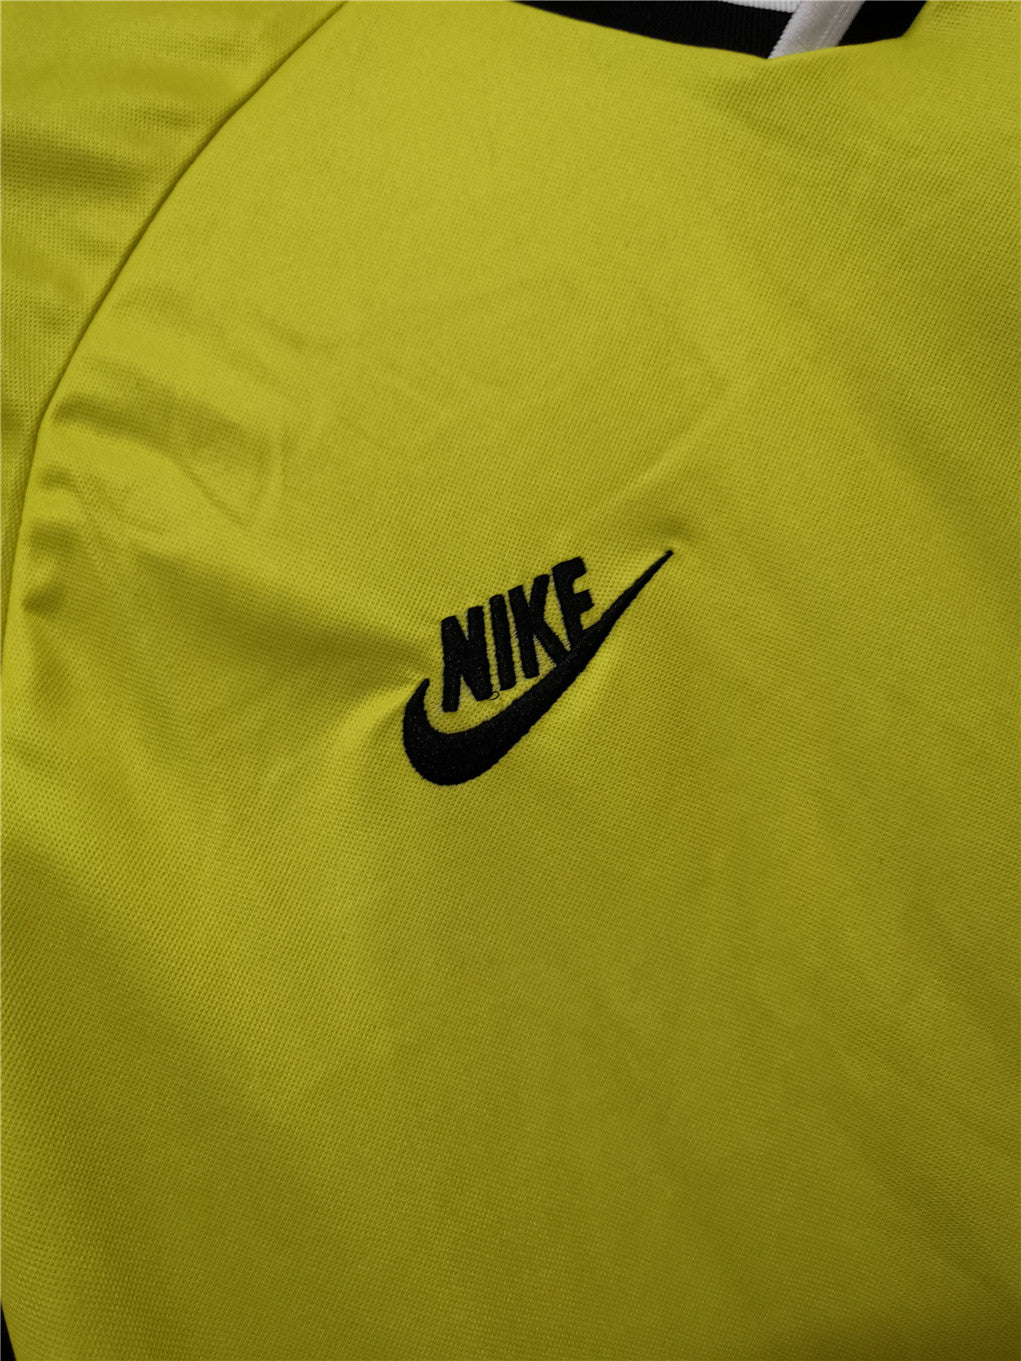 Borussia Dortmund 95-96 Home Shirt